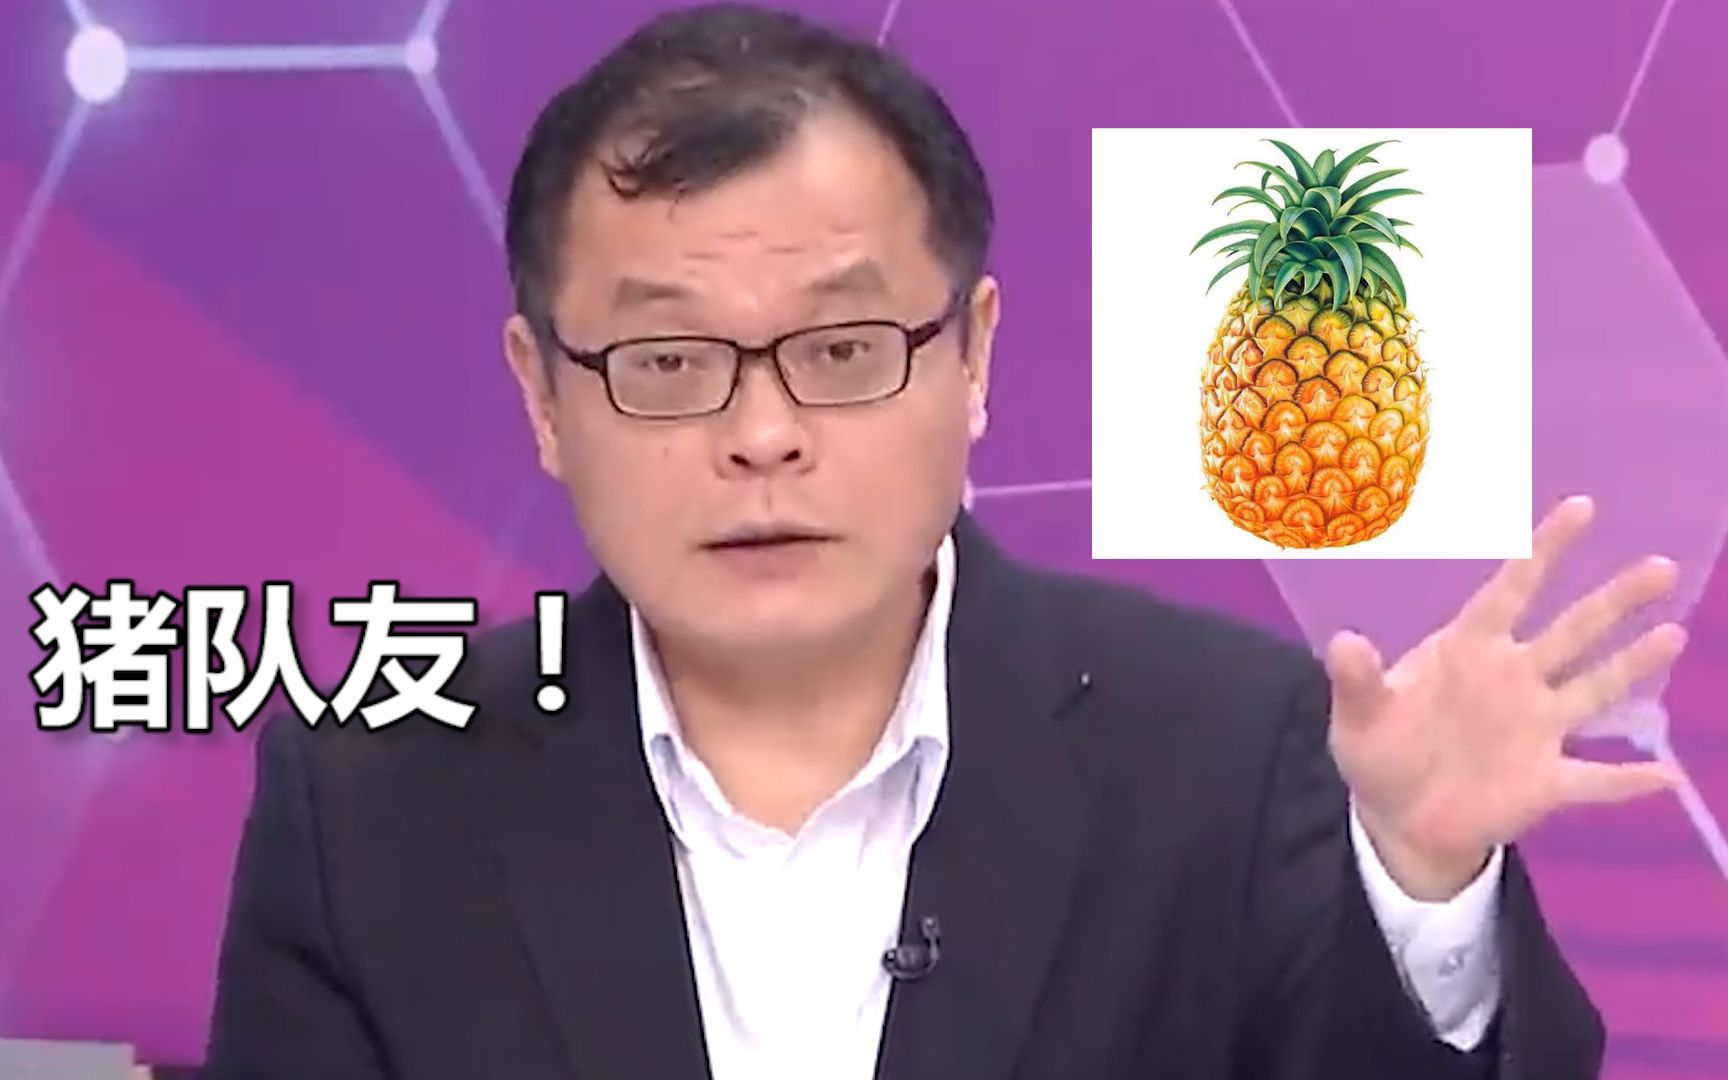 好菠萝卖日本，坏菠萝卖大陆？台名嘴怒斥猪队友：好心当驴肝肺！